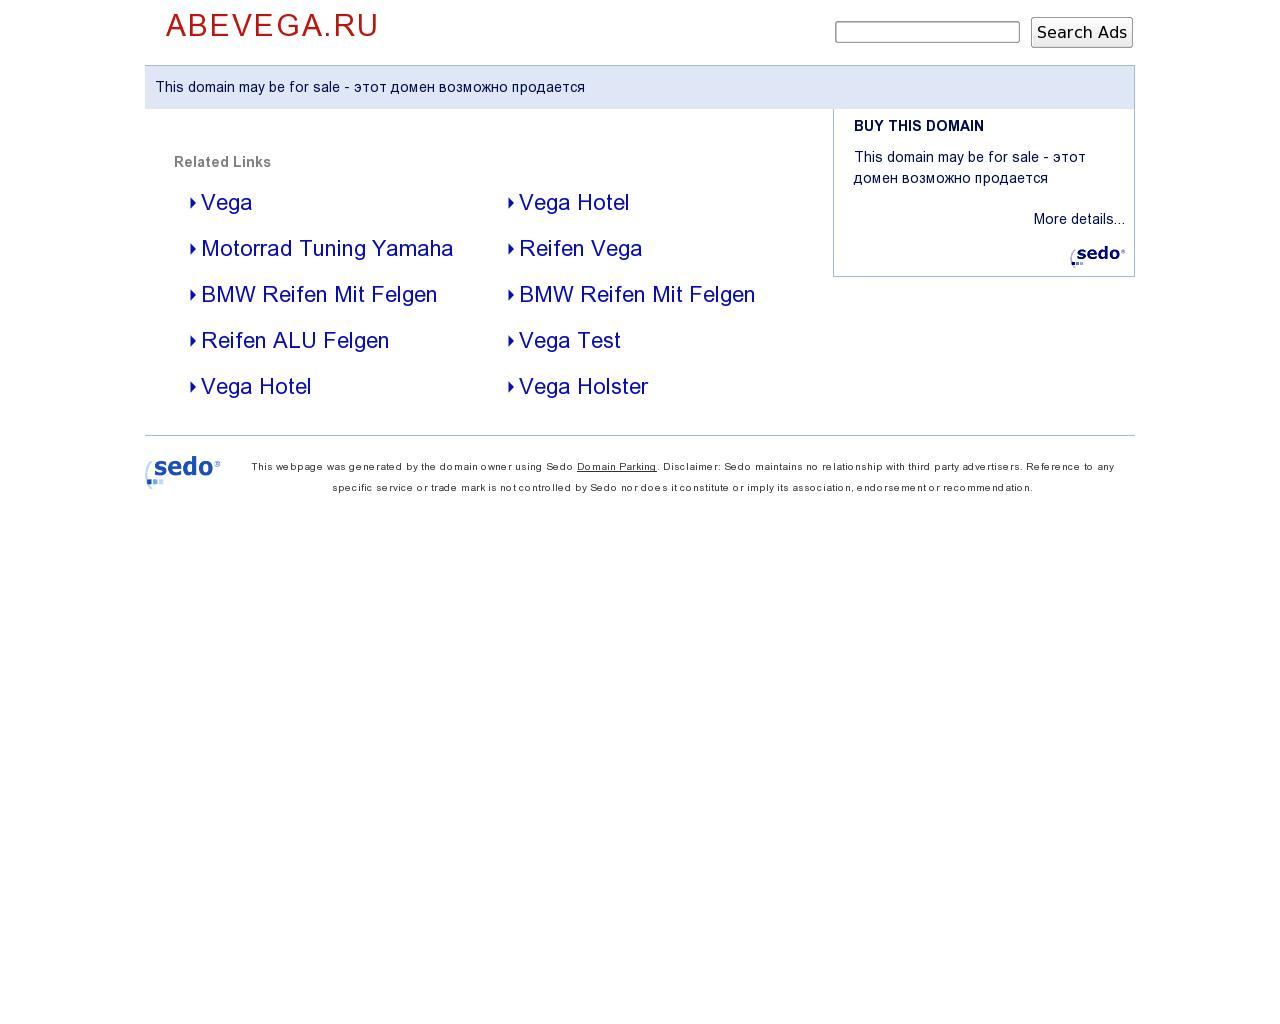 Изображение сайта abevega.ru в разрешении 1280x1024